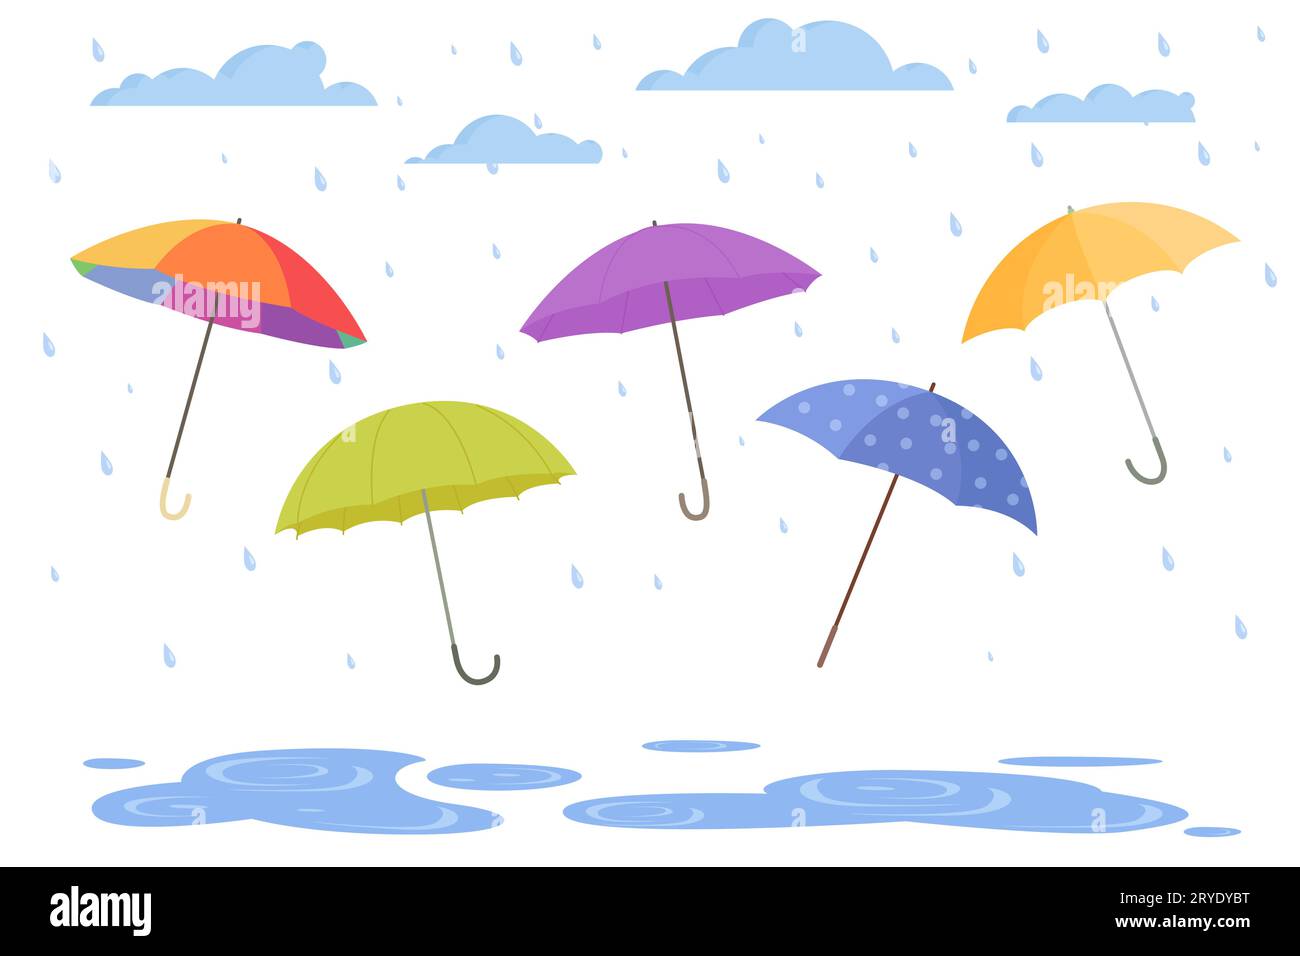 Öffnen Sie das Regenschirm-Set zum Schutz vor Regenvektorillustration. Cartoon isolierte Sonnenschirme in verschiedenen Farben mit Griffen und wasserdichtem Stoff, Zubehör zum Schutz vor Regenfällen aus Wolken Stock Vektor